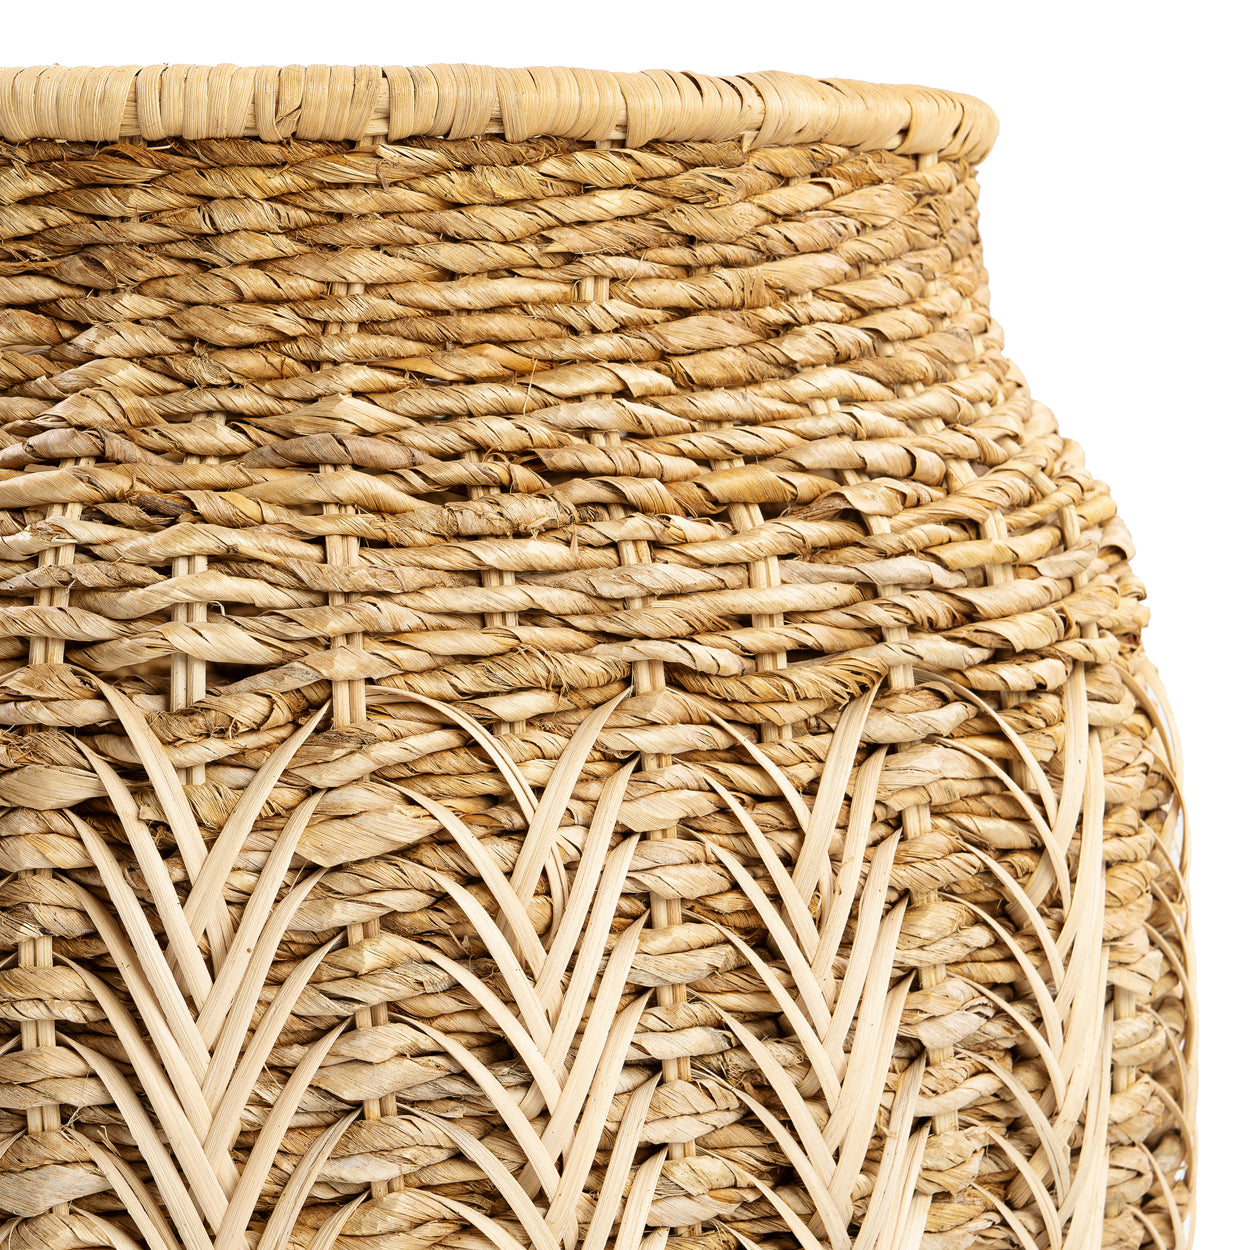 Luziru Basket Natural - Medium